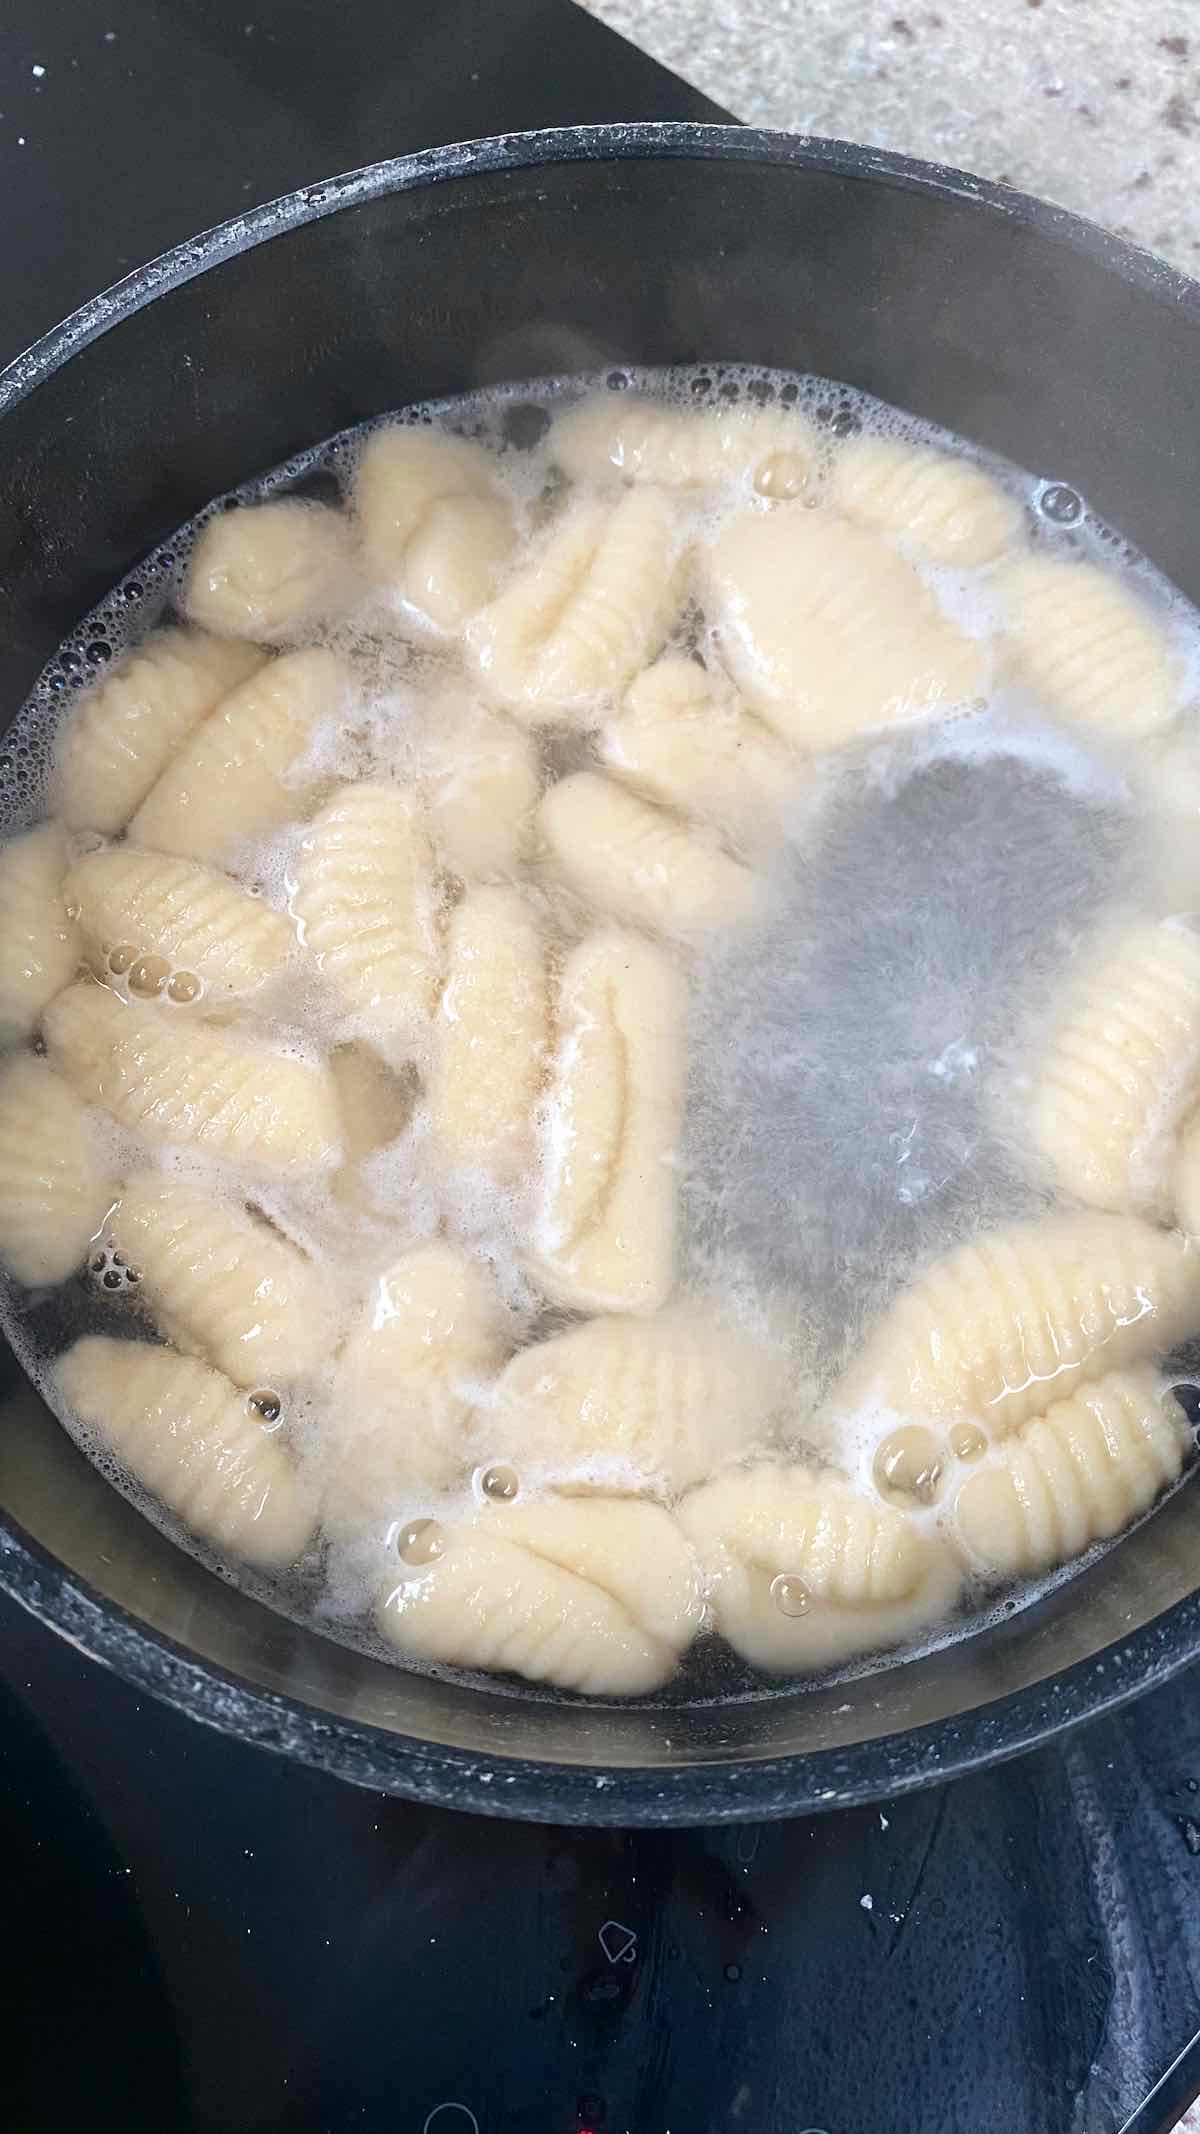 Boiling gnocchi in a pot